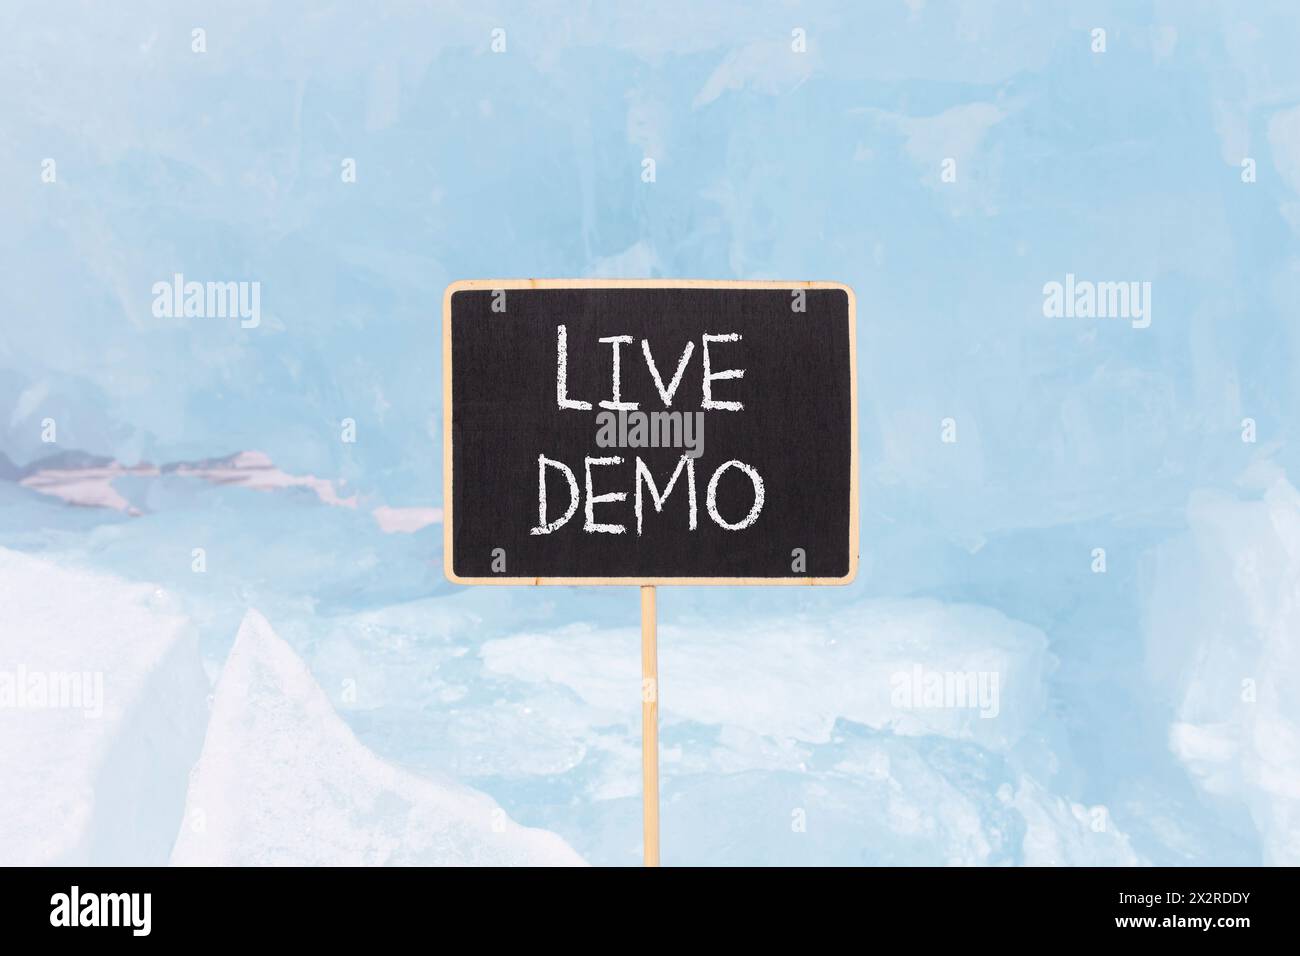 Simbolo demo dal vivo. Demo di Concept Words Live su una bellissima lavagna nera gialla. Bellissimo sfondo blu di ghiaccio. Copia spazio. Conc. Demo aziendali e live Foto Stock